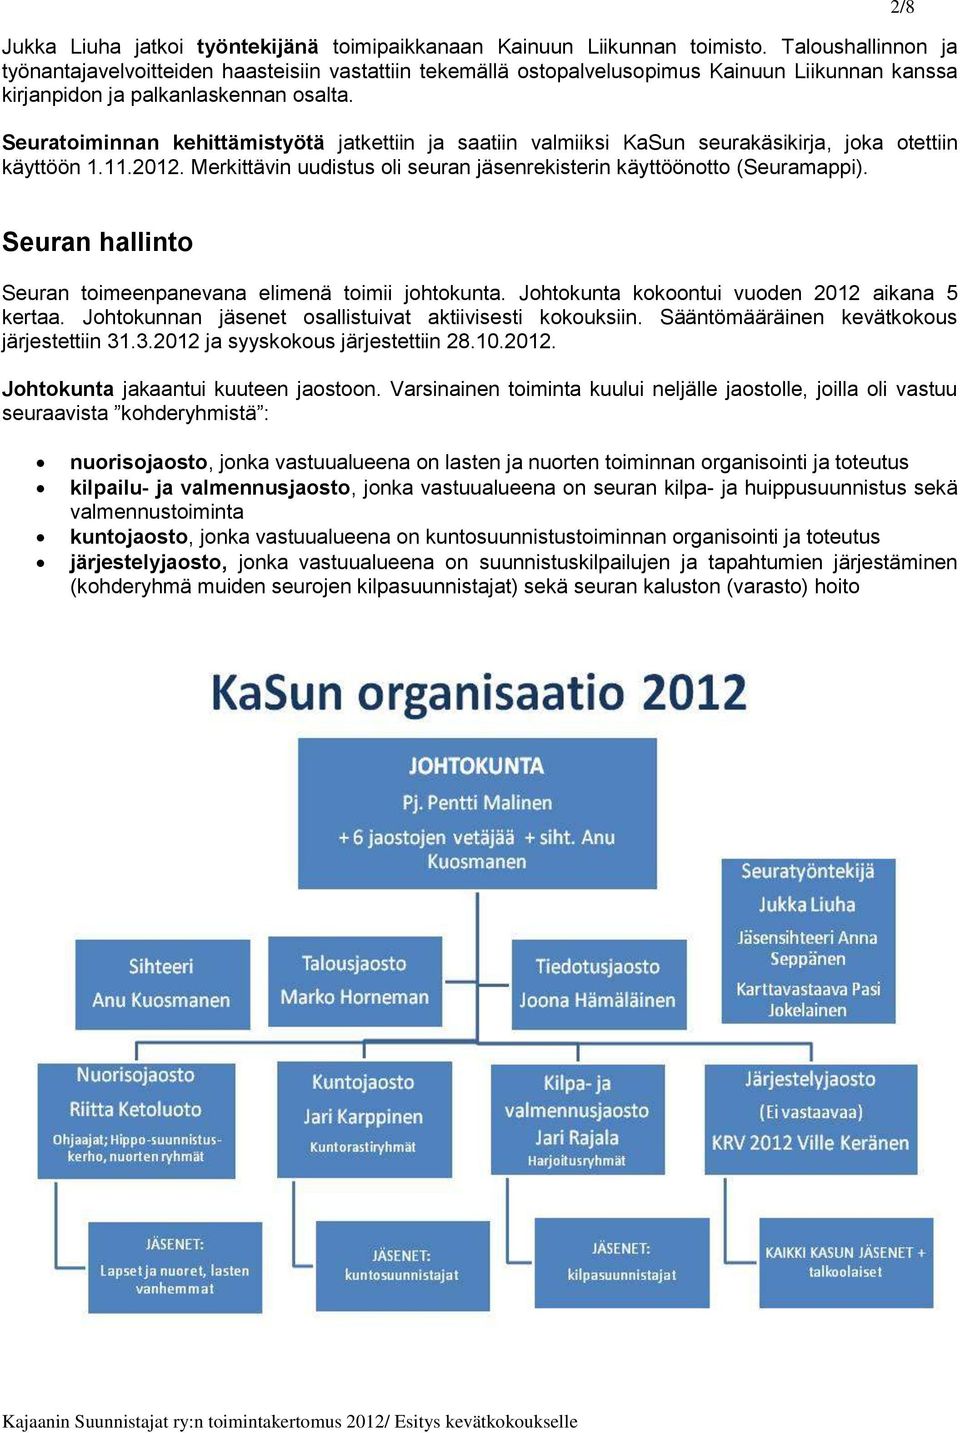 Seuratoiminnan kehittämistyötä jatkettiin ja saatiin valmiiksi KaSun seurakäsikirja, joka otettiin käyttöön 1.11.2012. Merkittävin uudistus oli seuran jäsenrekisterin käyttöönotto (Seuramappi).